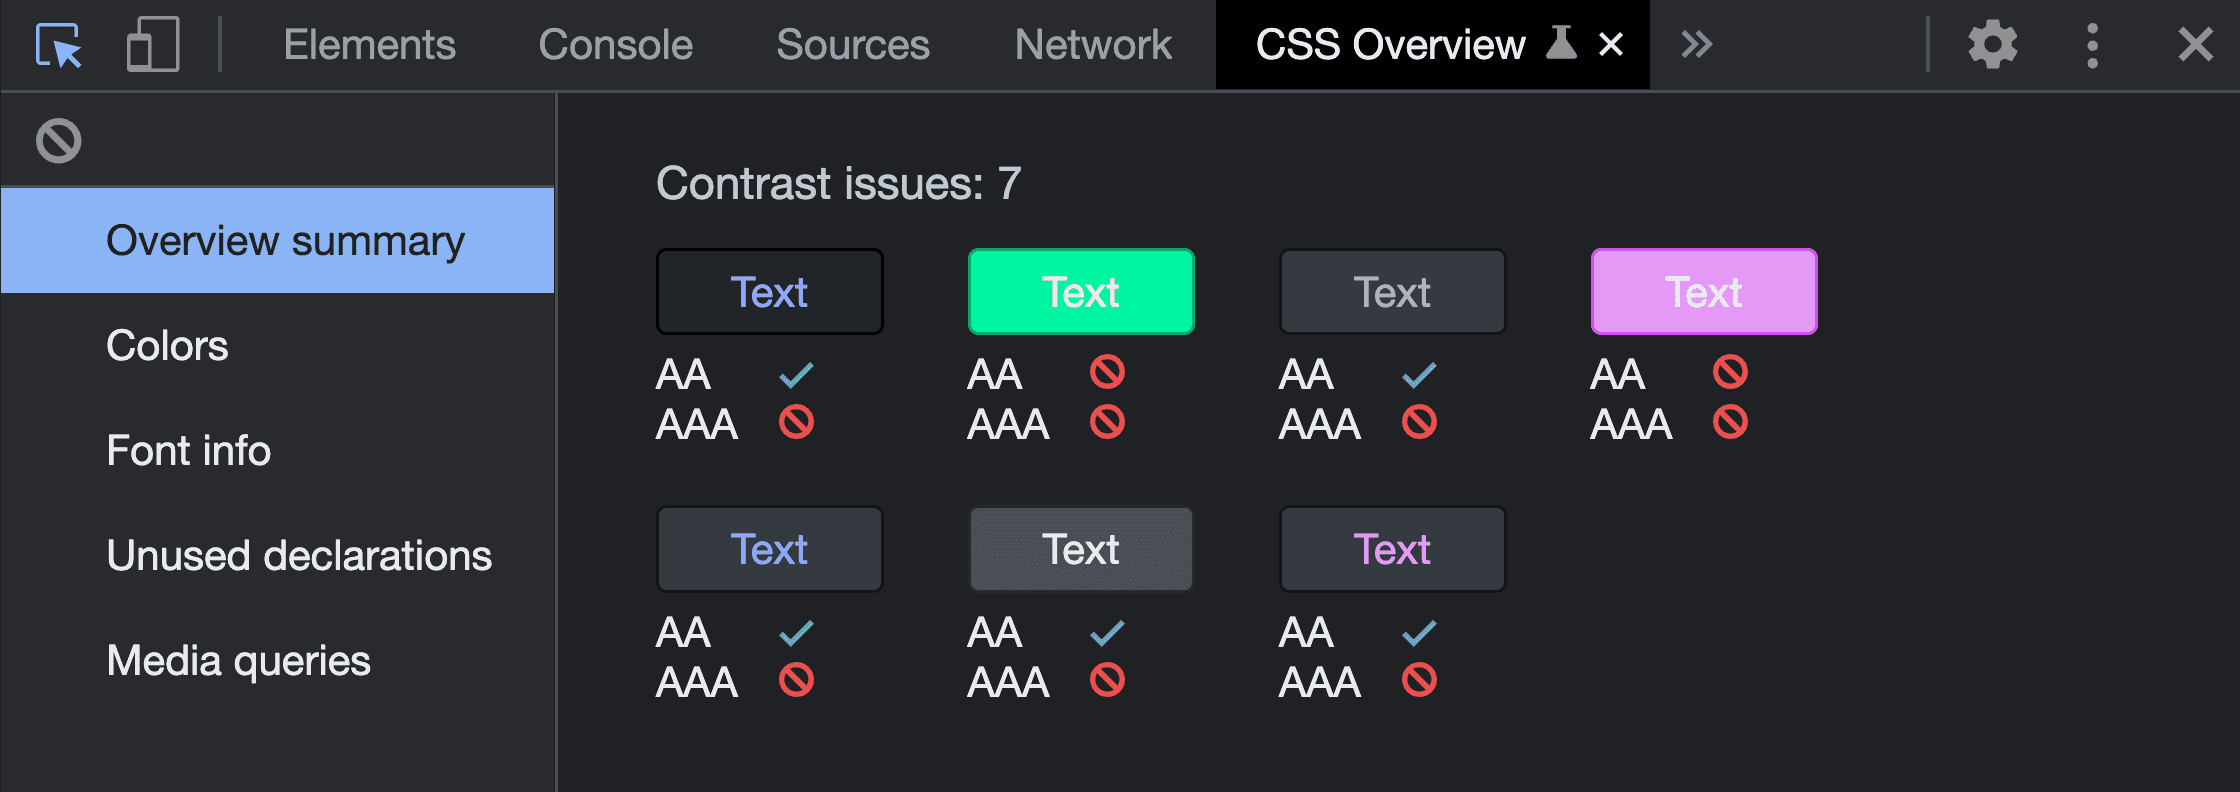 运行“CSS 概览”捕获工具生成的“概览摘要”屏幕截图。该图显示了 7 个对比度问题，显示了发现的颜色配对及其失败结果。